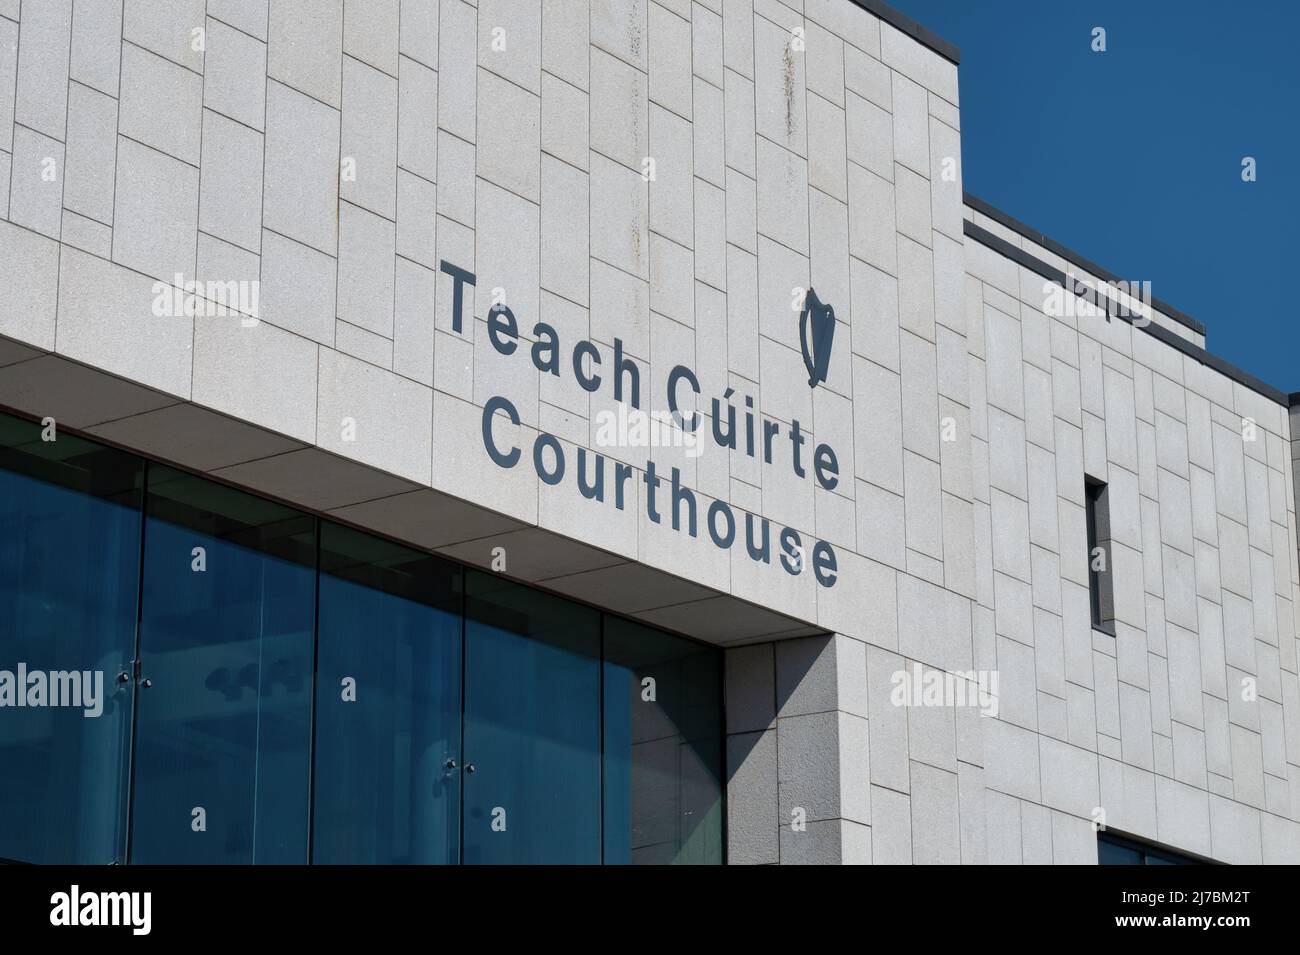 Kilkenny, Irlanda - 20 de abril de 2022: La señal para Teach Cuirte Courthouse en Kilkenny Irlanda. Foto de stock